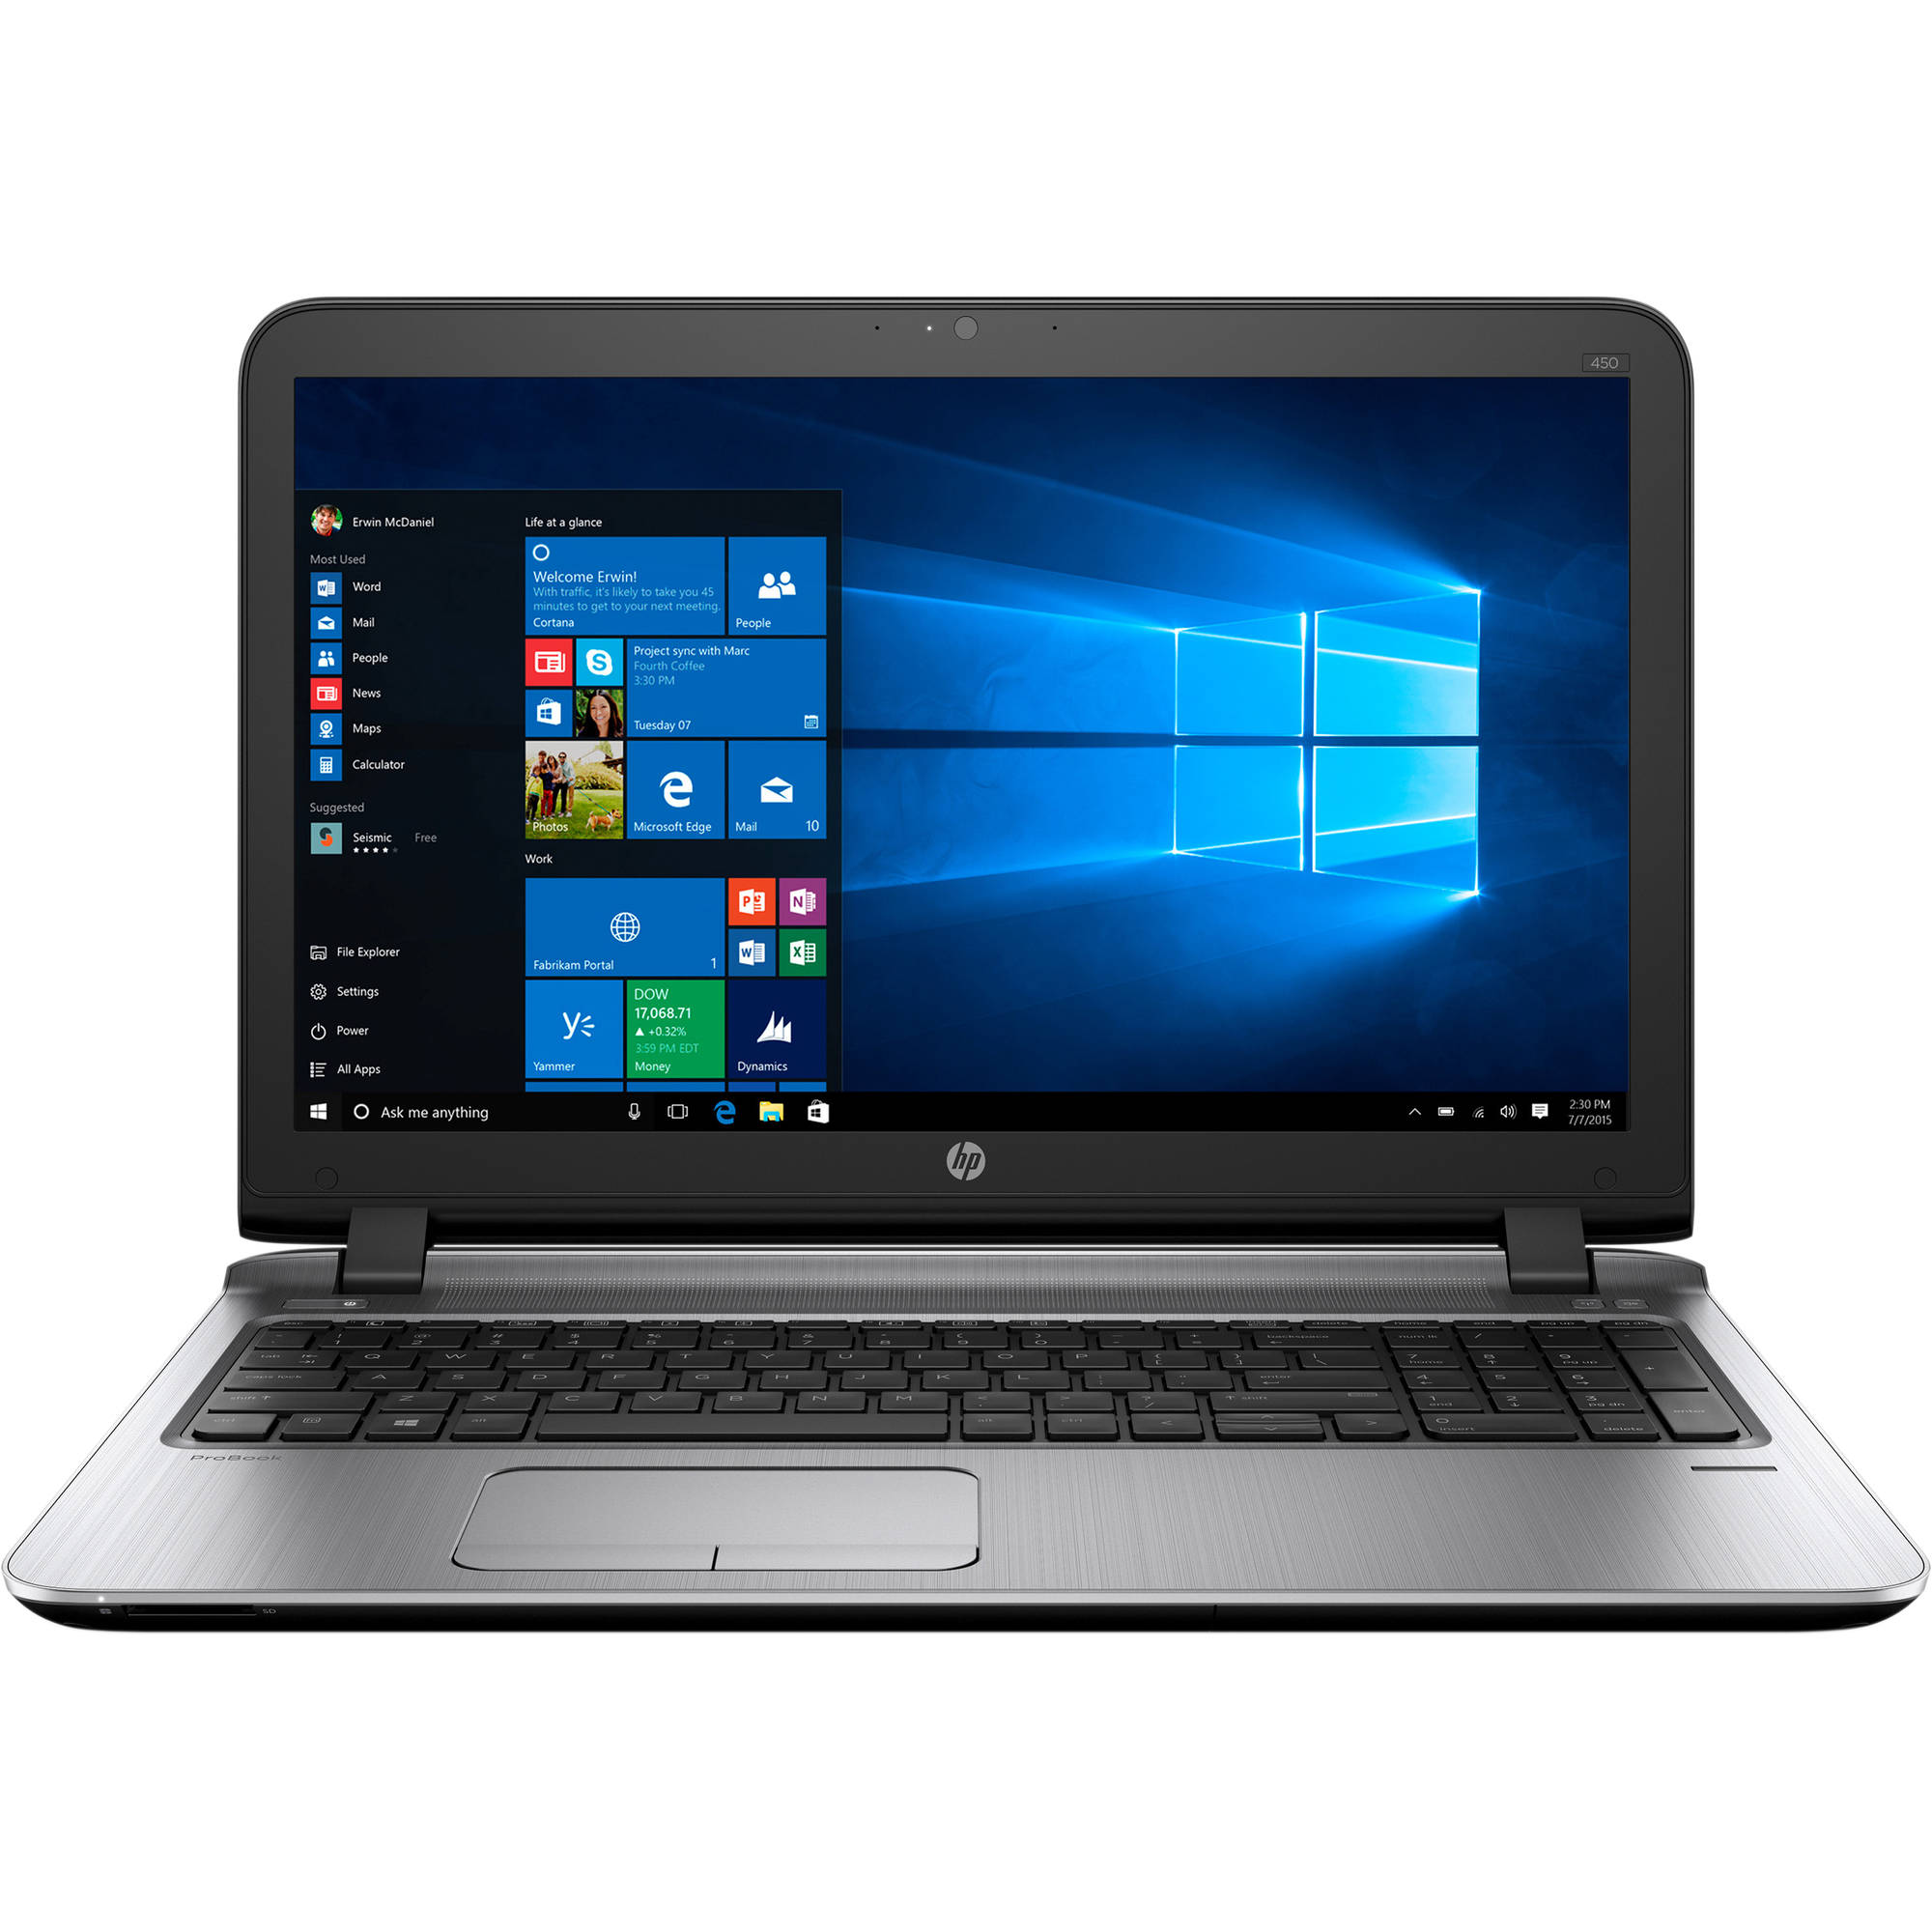  Laptop HP Probook 450 G3, Intel Core i5-6200U, 8GB DDR4, SSD 256GB, Intel HD Graphics, Windows 10 Pro 